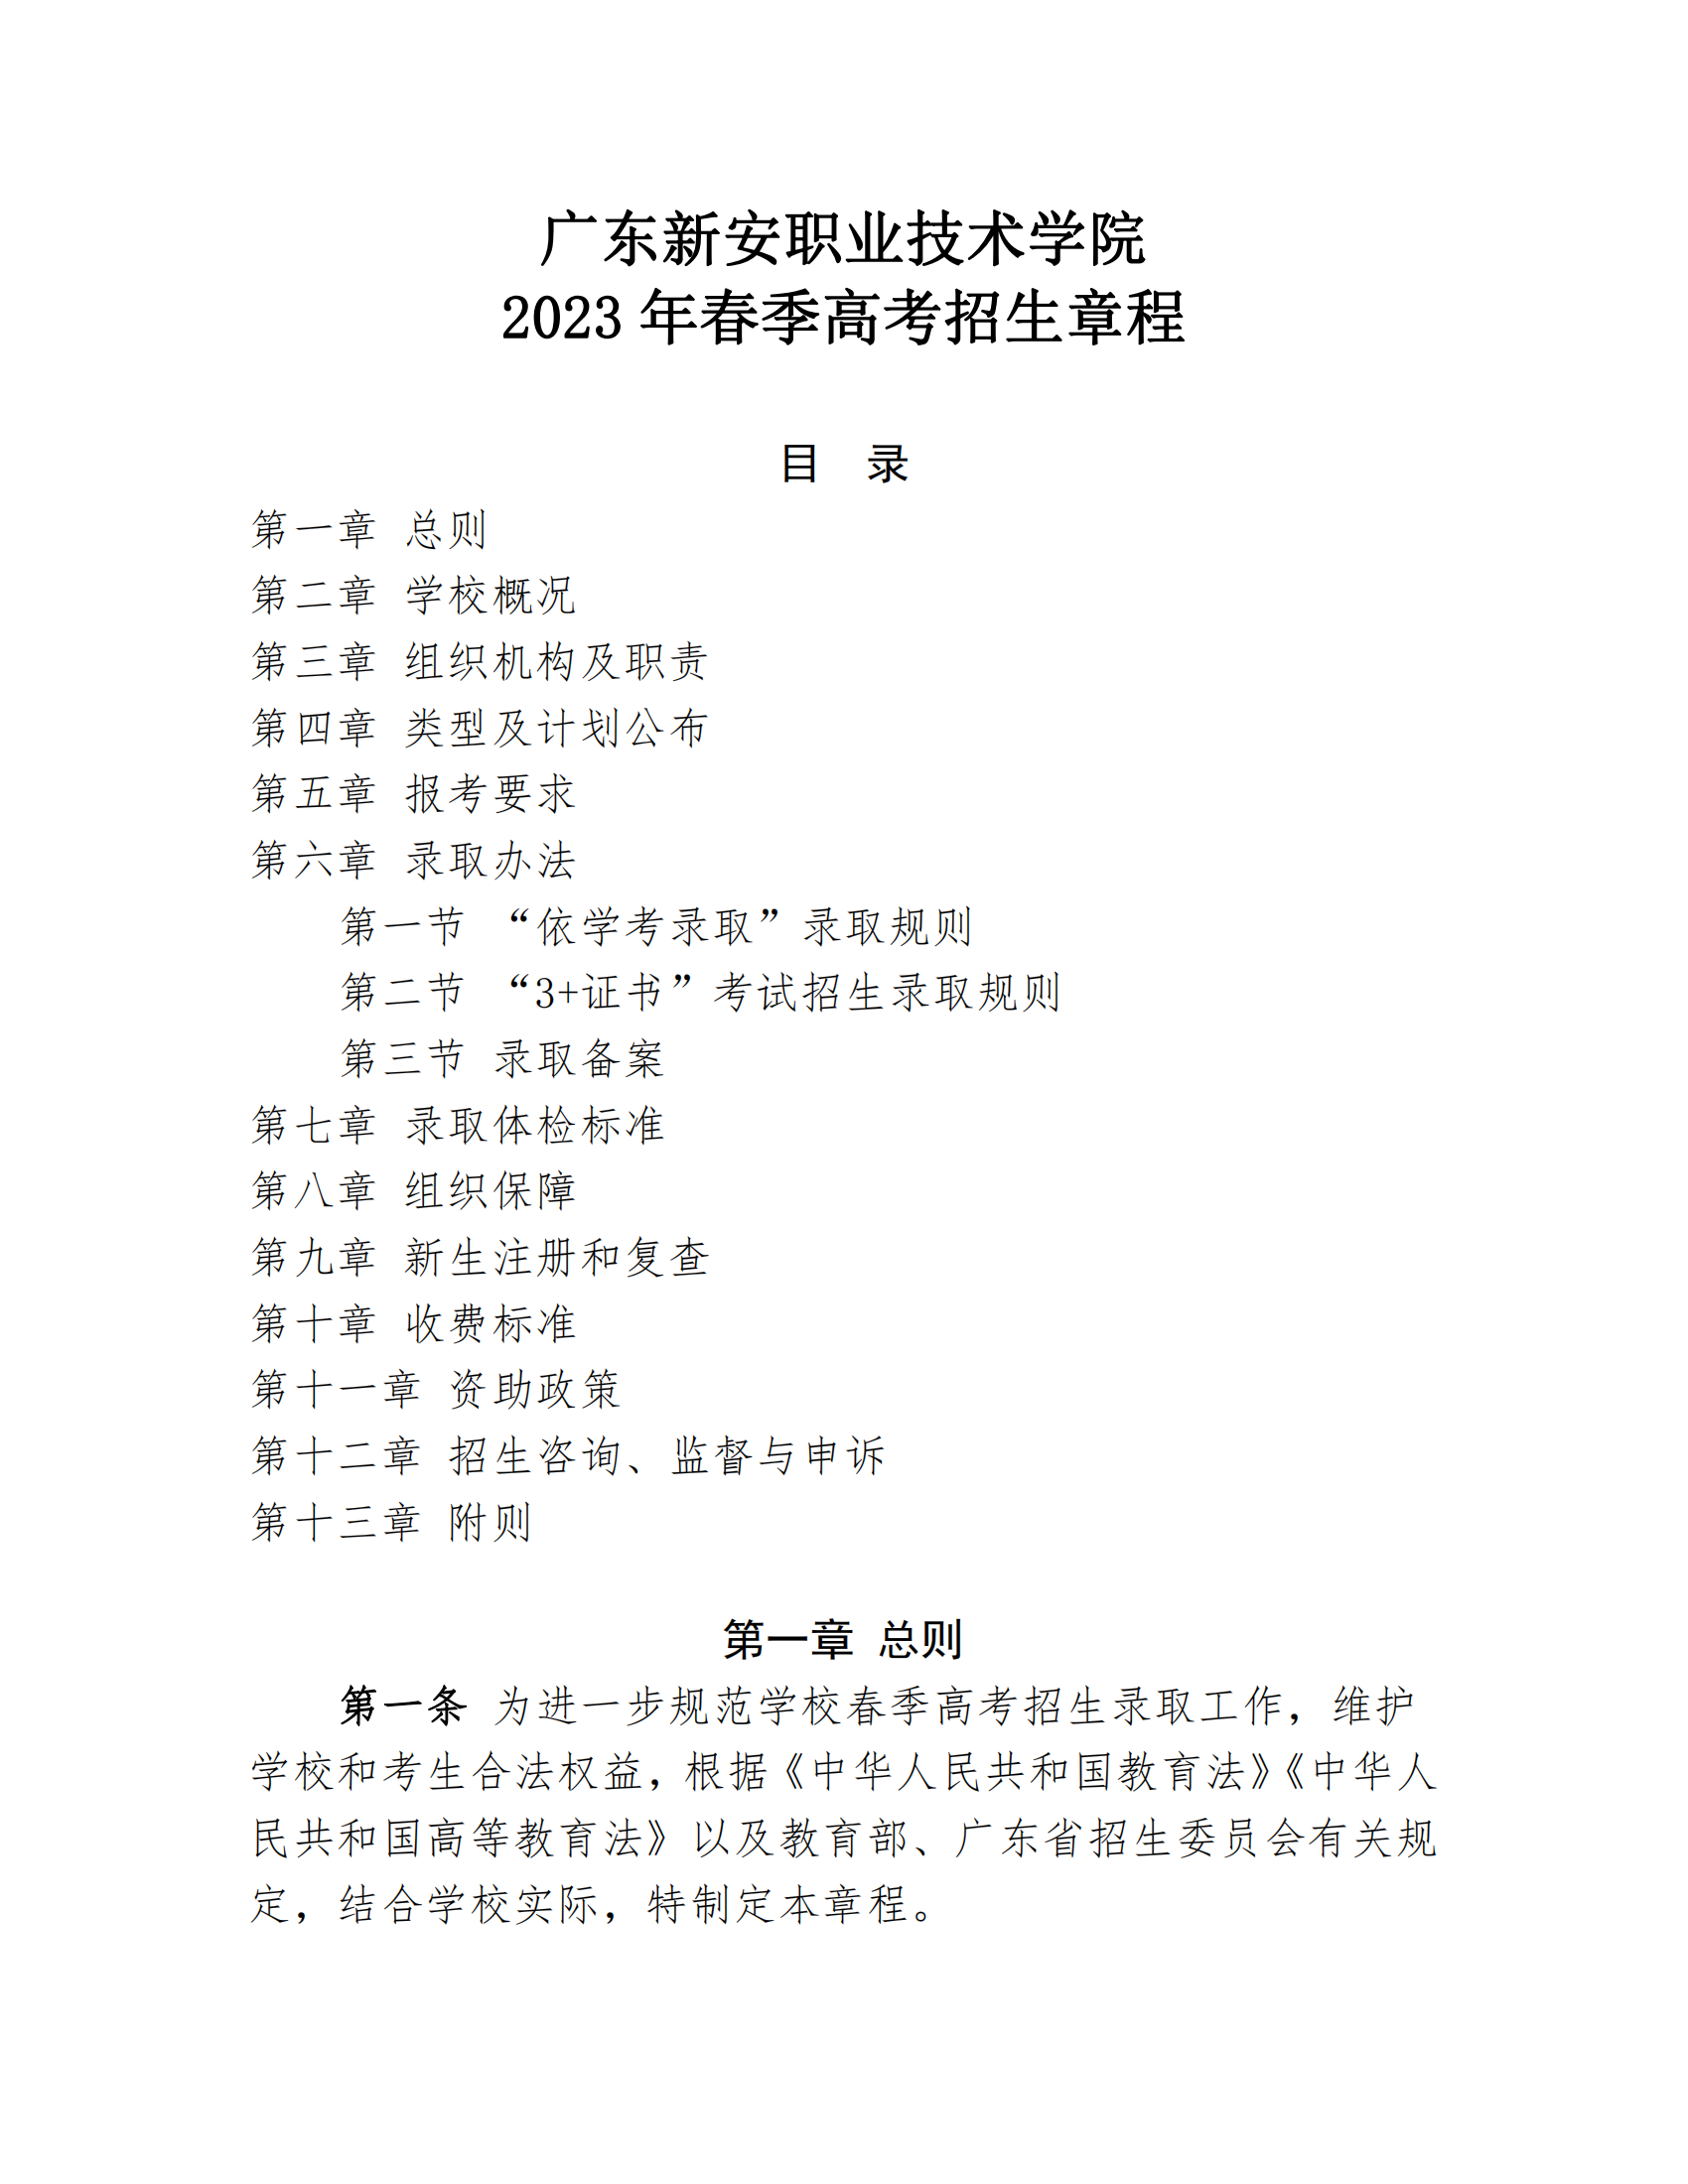 2023年广东新安职业技术学院春季高考招生章程